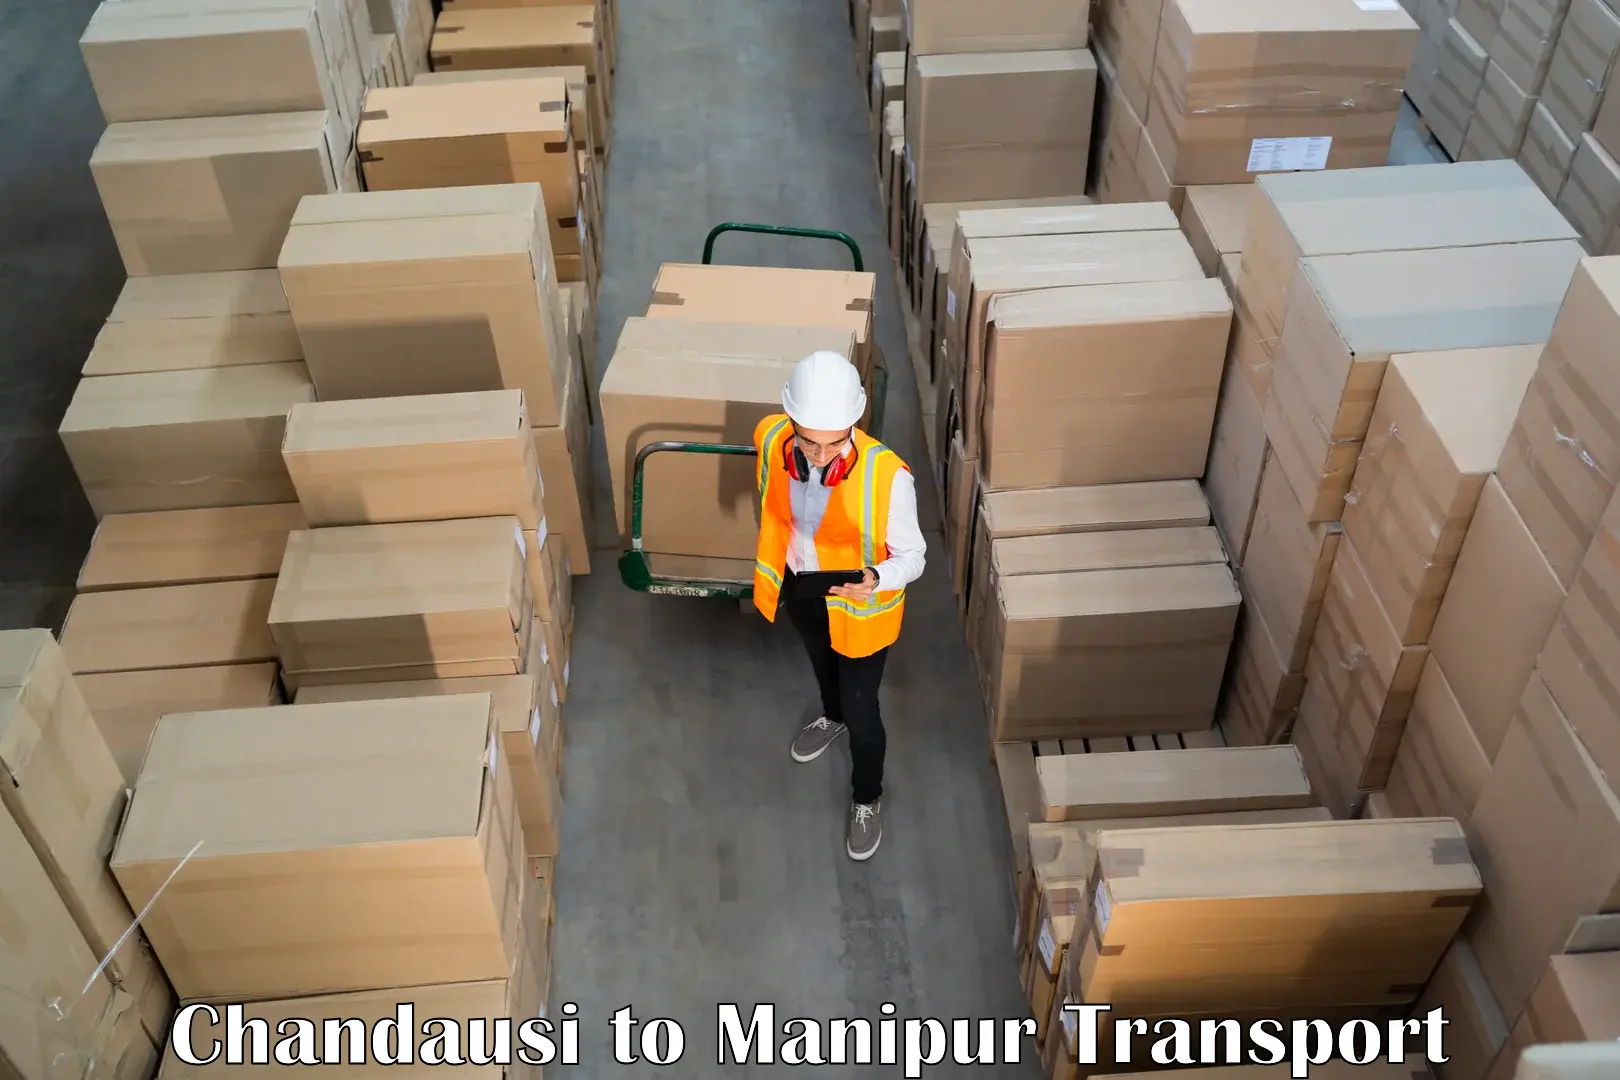 Furniture transport service Chandausi to Manipur